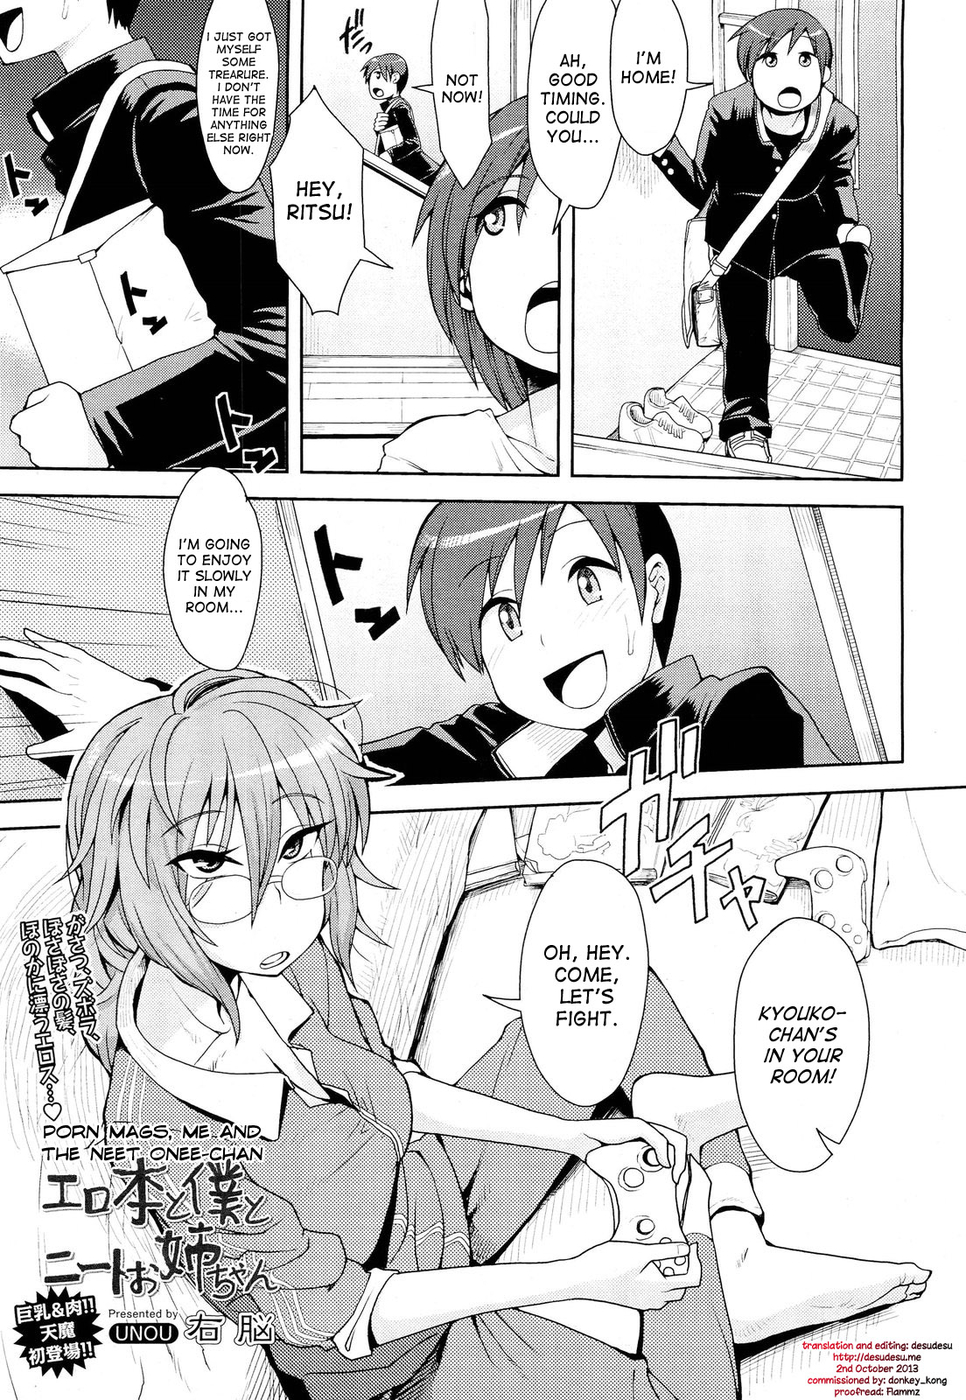 Hentai Manga Comic-Porn Mags, Me and The NEET Onee-chan-Read-1